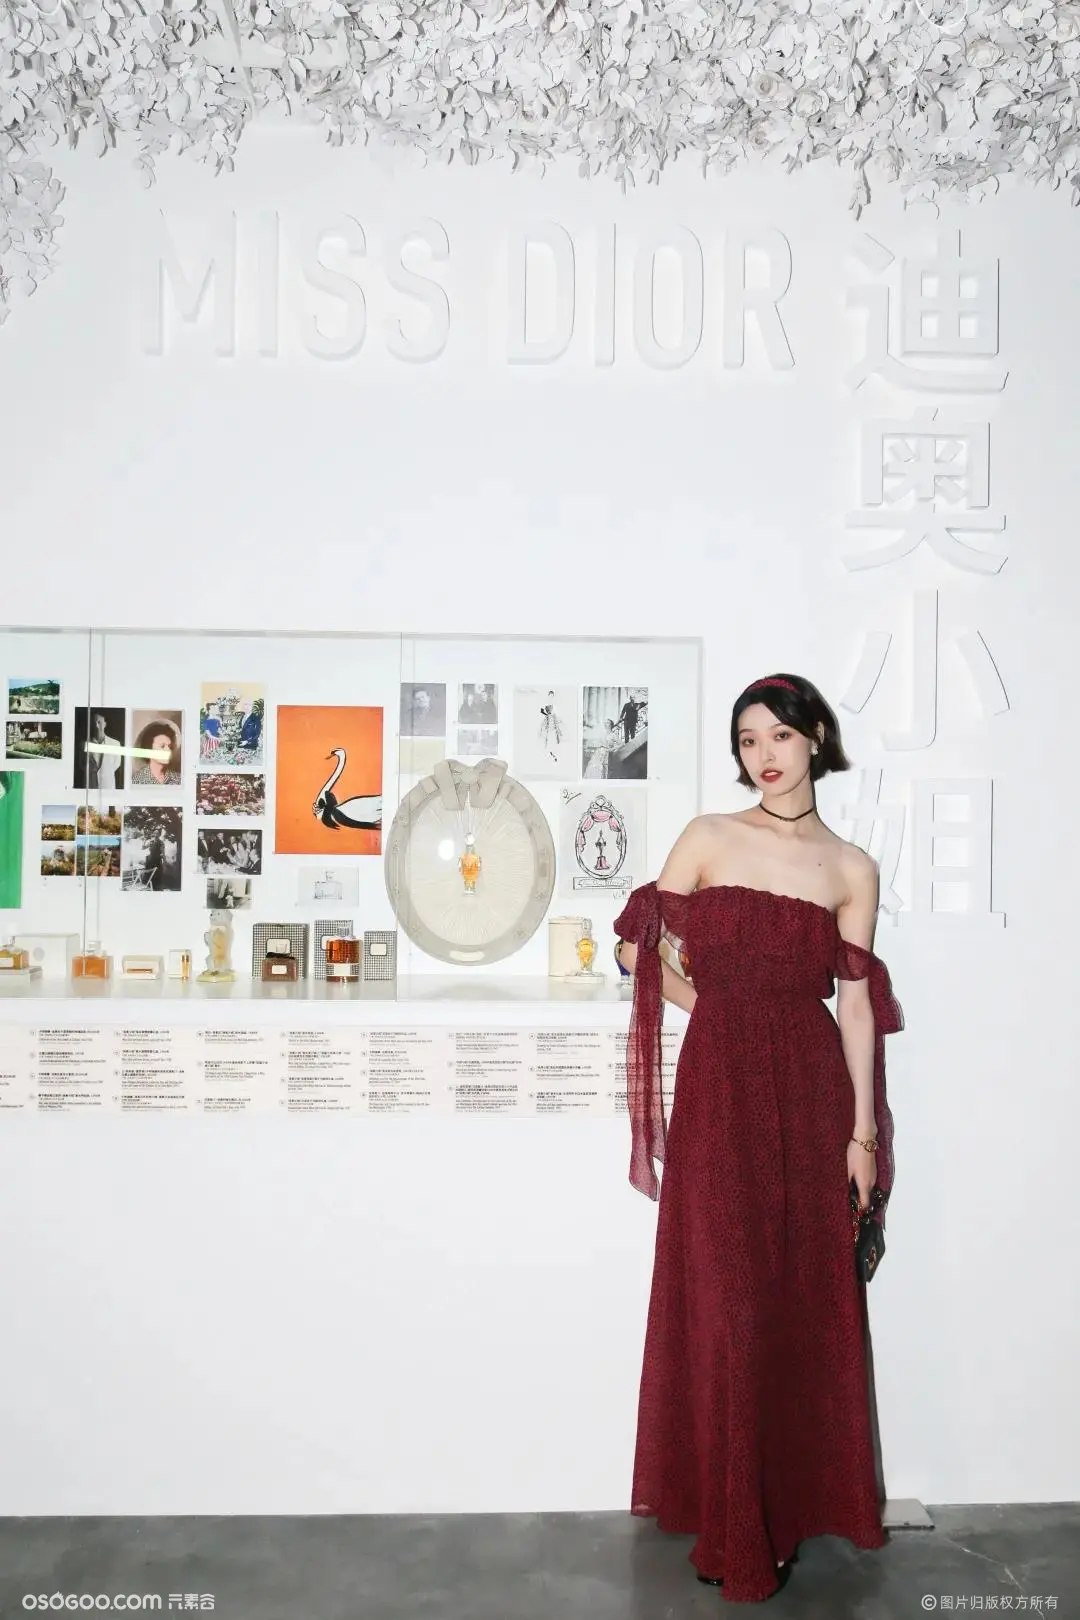 “克里斯汀·迪奥，梦之设计师”展览全面展示了品牌经典作品